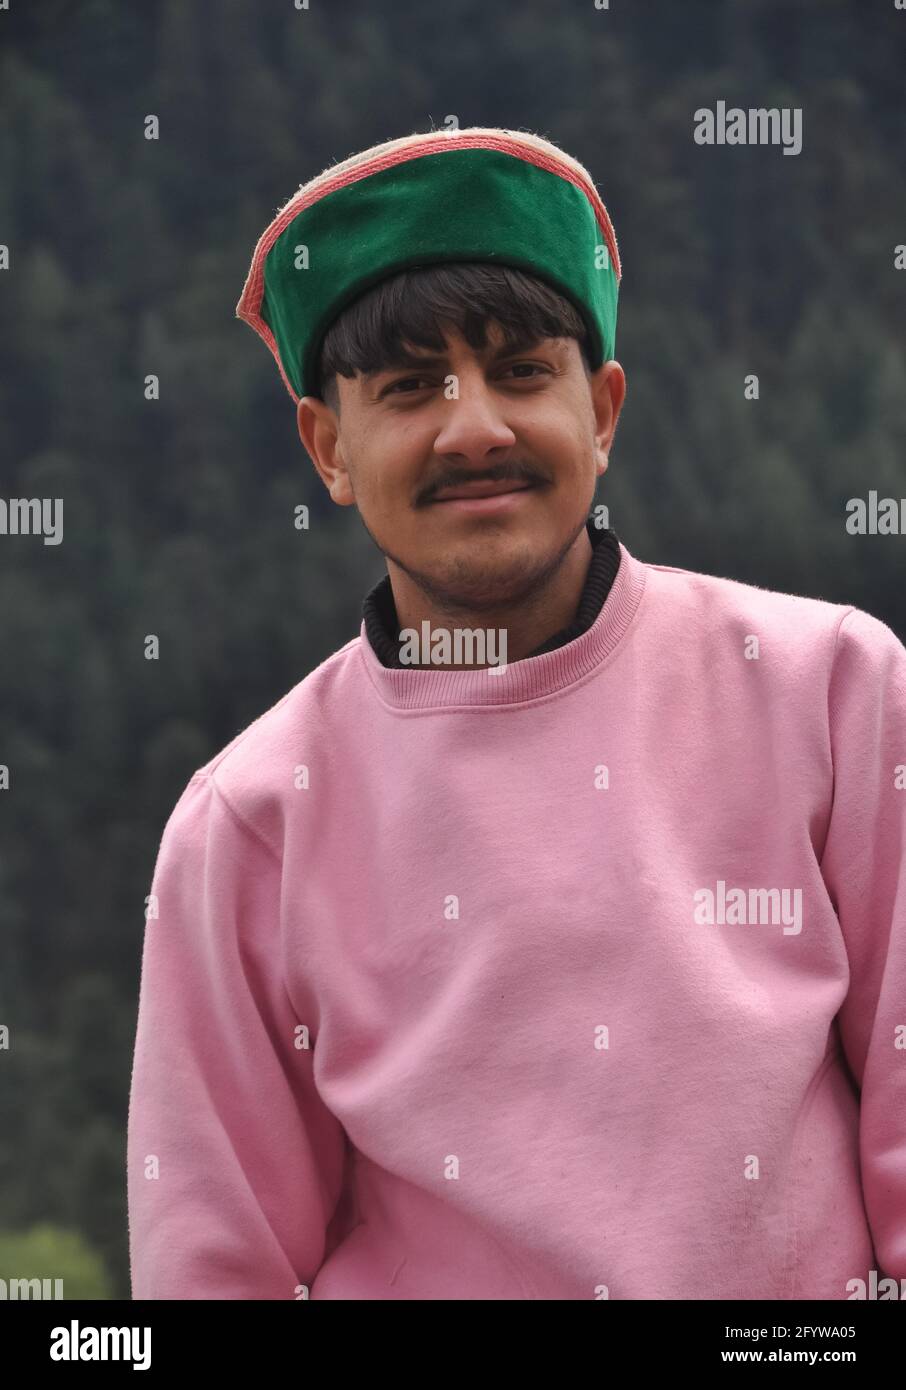 Ritratto di un bel giovane ragazzo che indossa felpa rosa e himachali topi (cappellino tradizionale Himachali), un bell'uomo indiano del nord in piedi all'aperto guardando la macchina fotografica Foto Stock